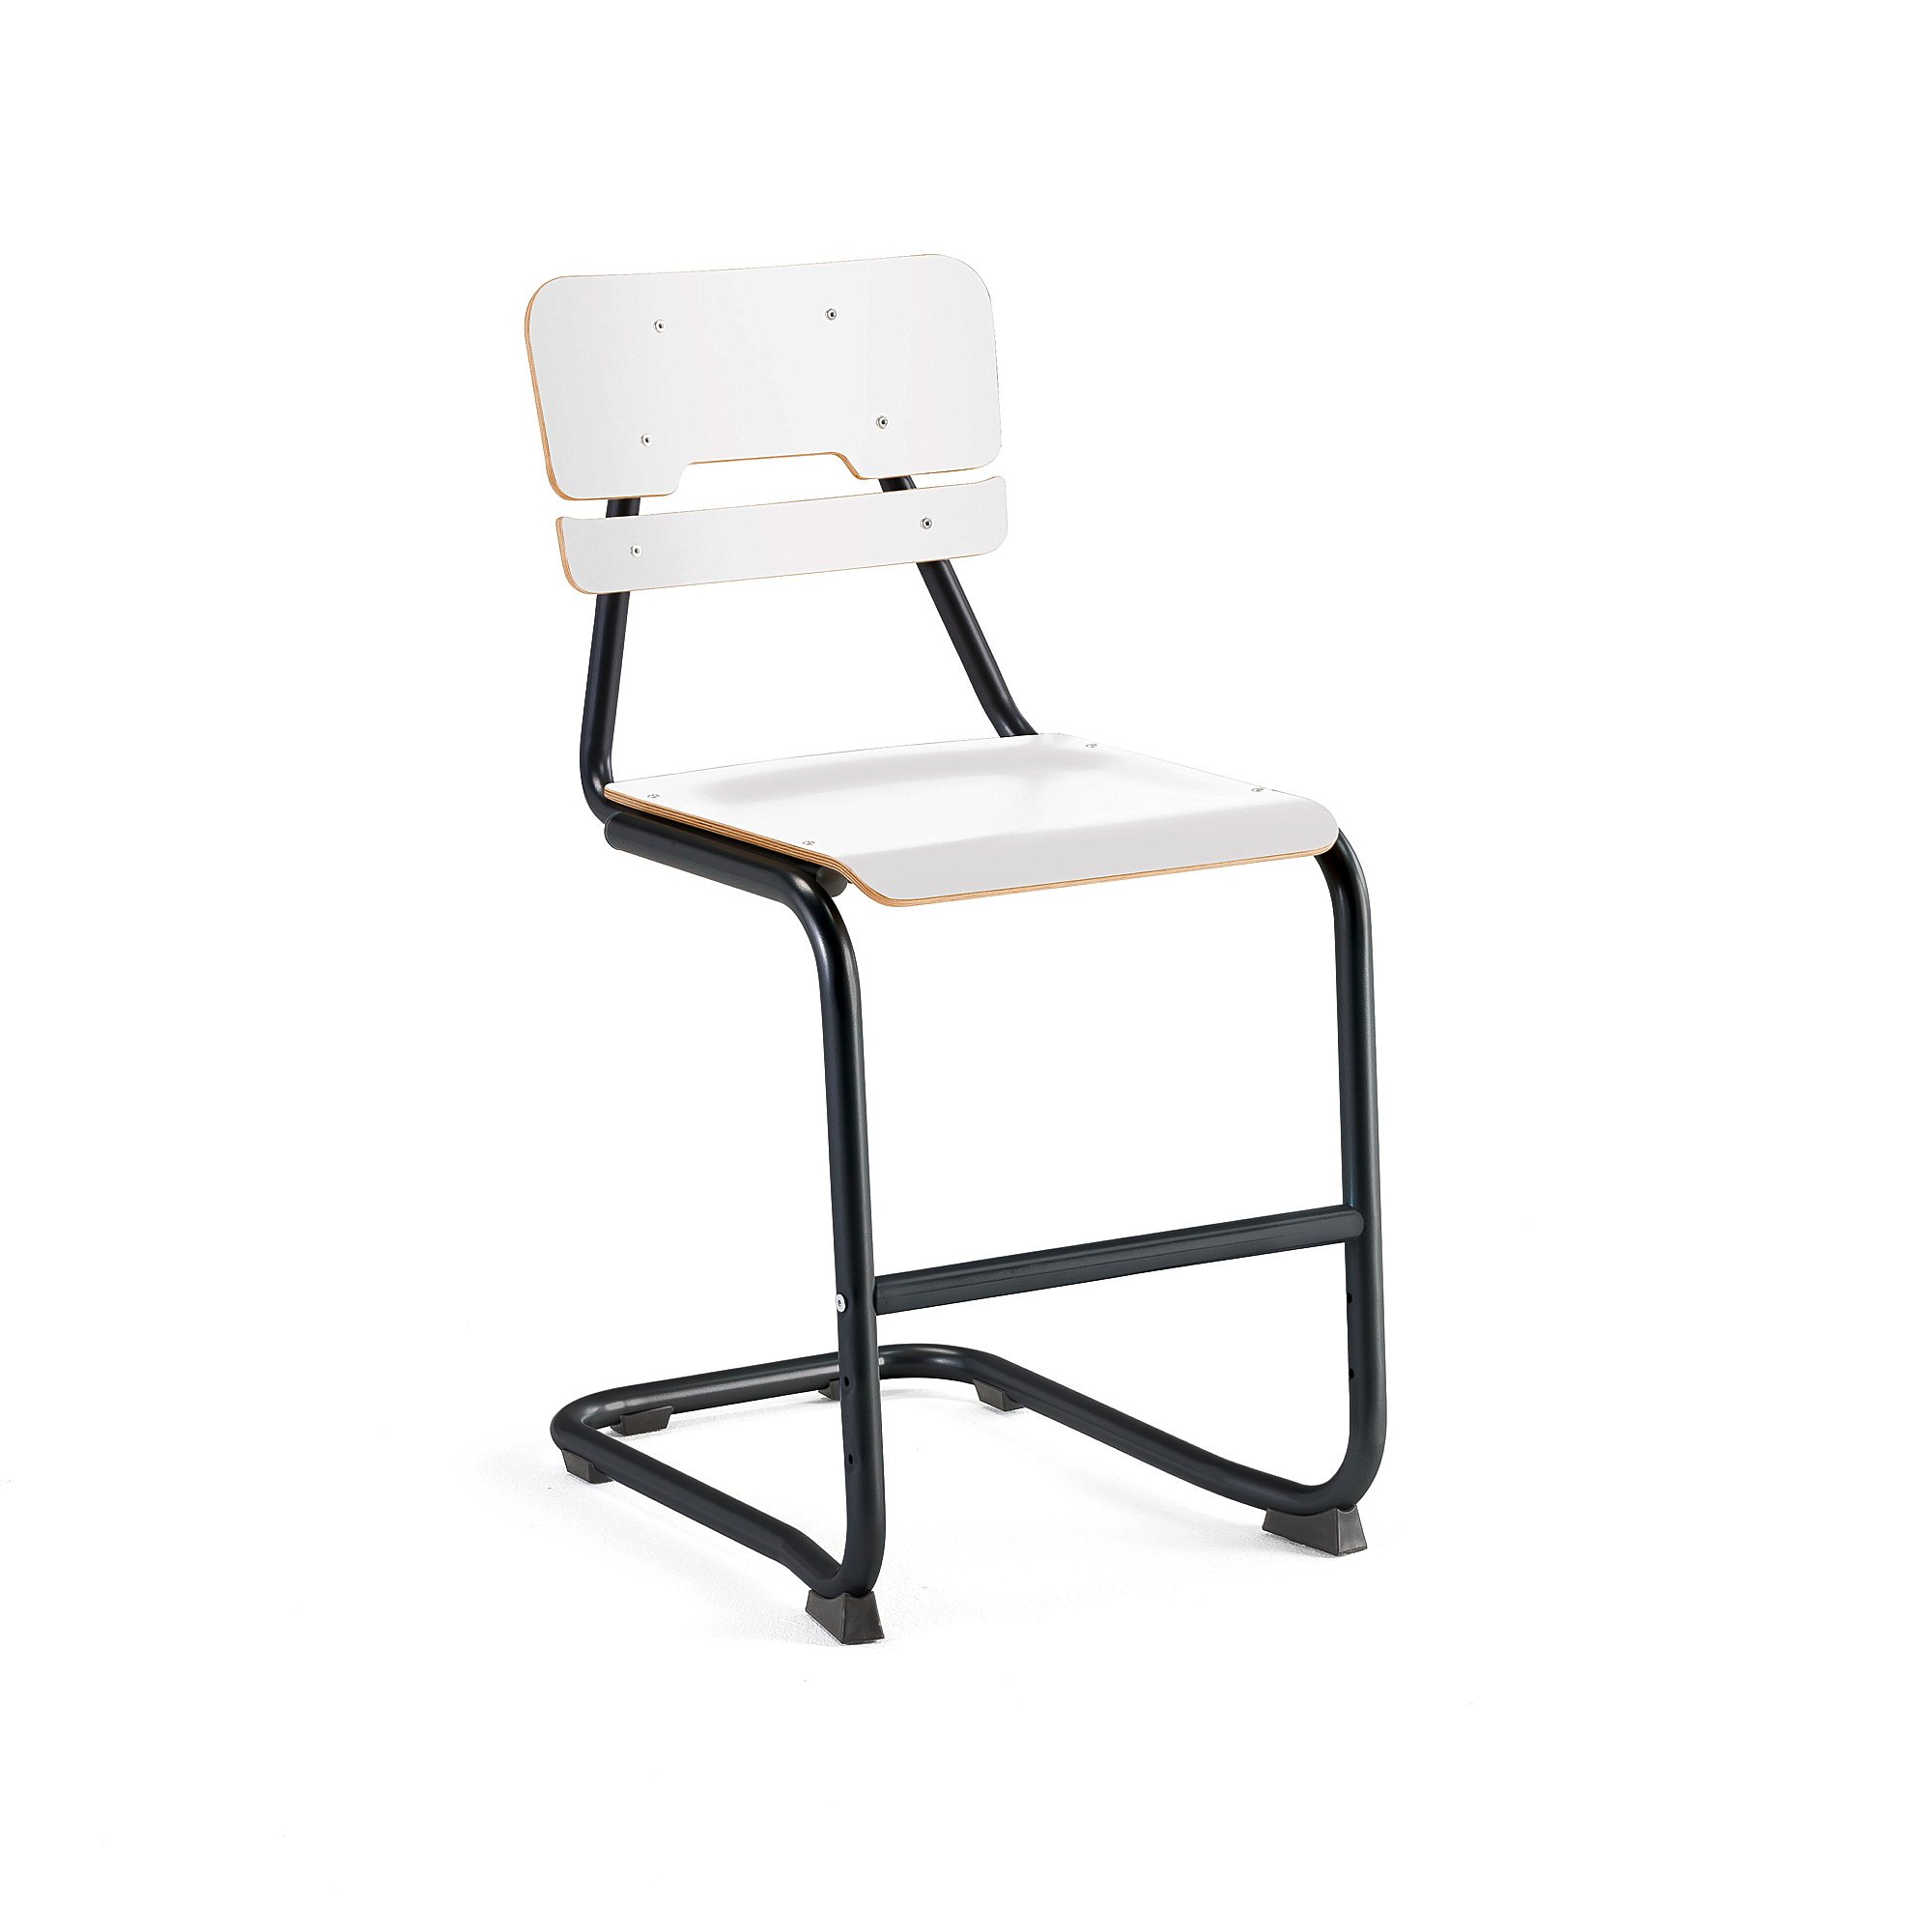 Školní židle LEGERE I, výška 500 mm, antracitově šedá, bílá